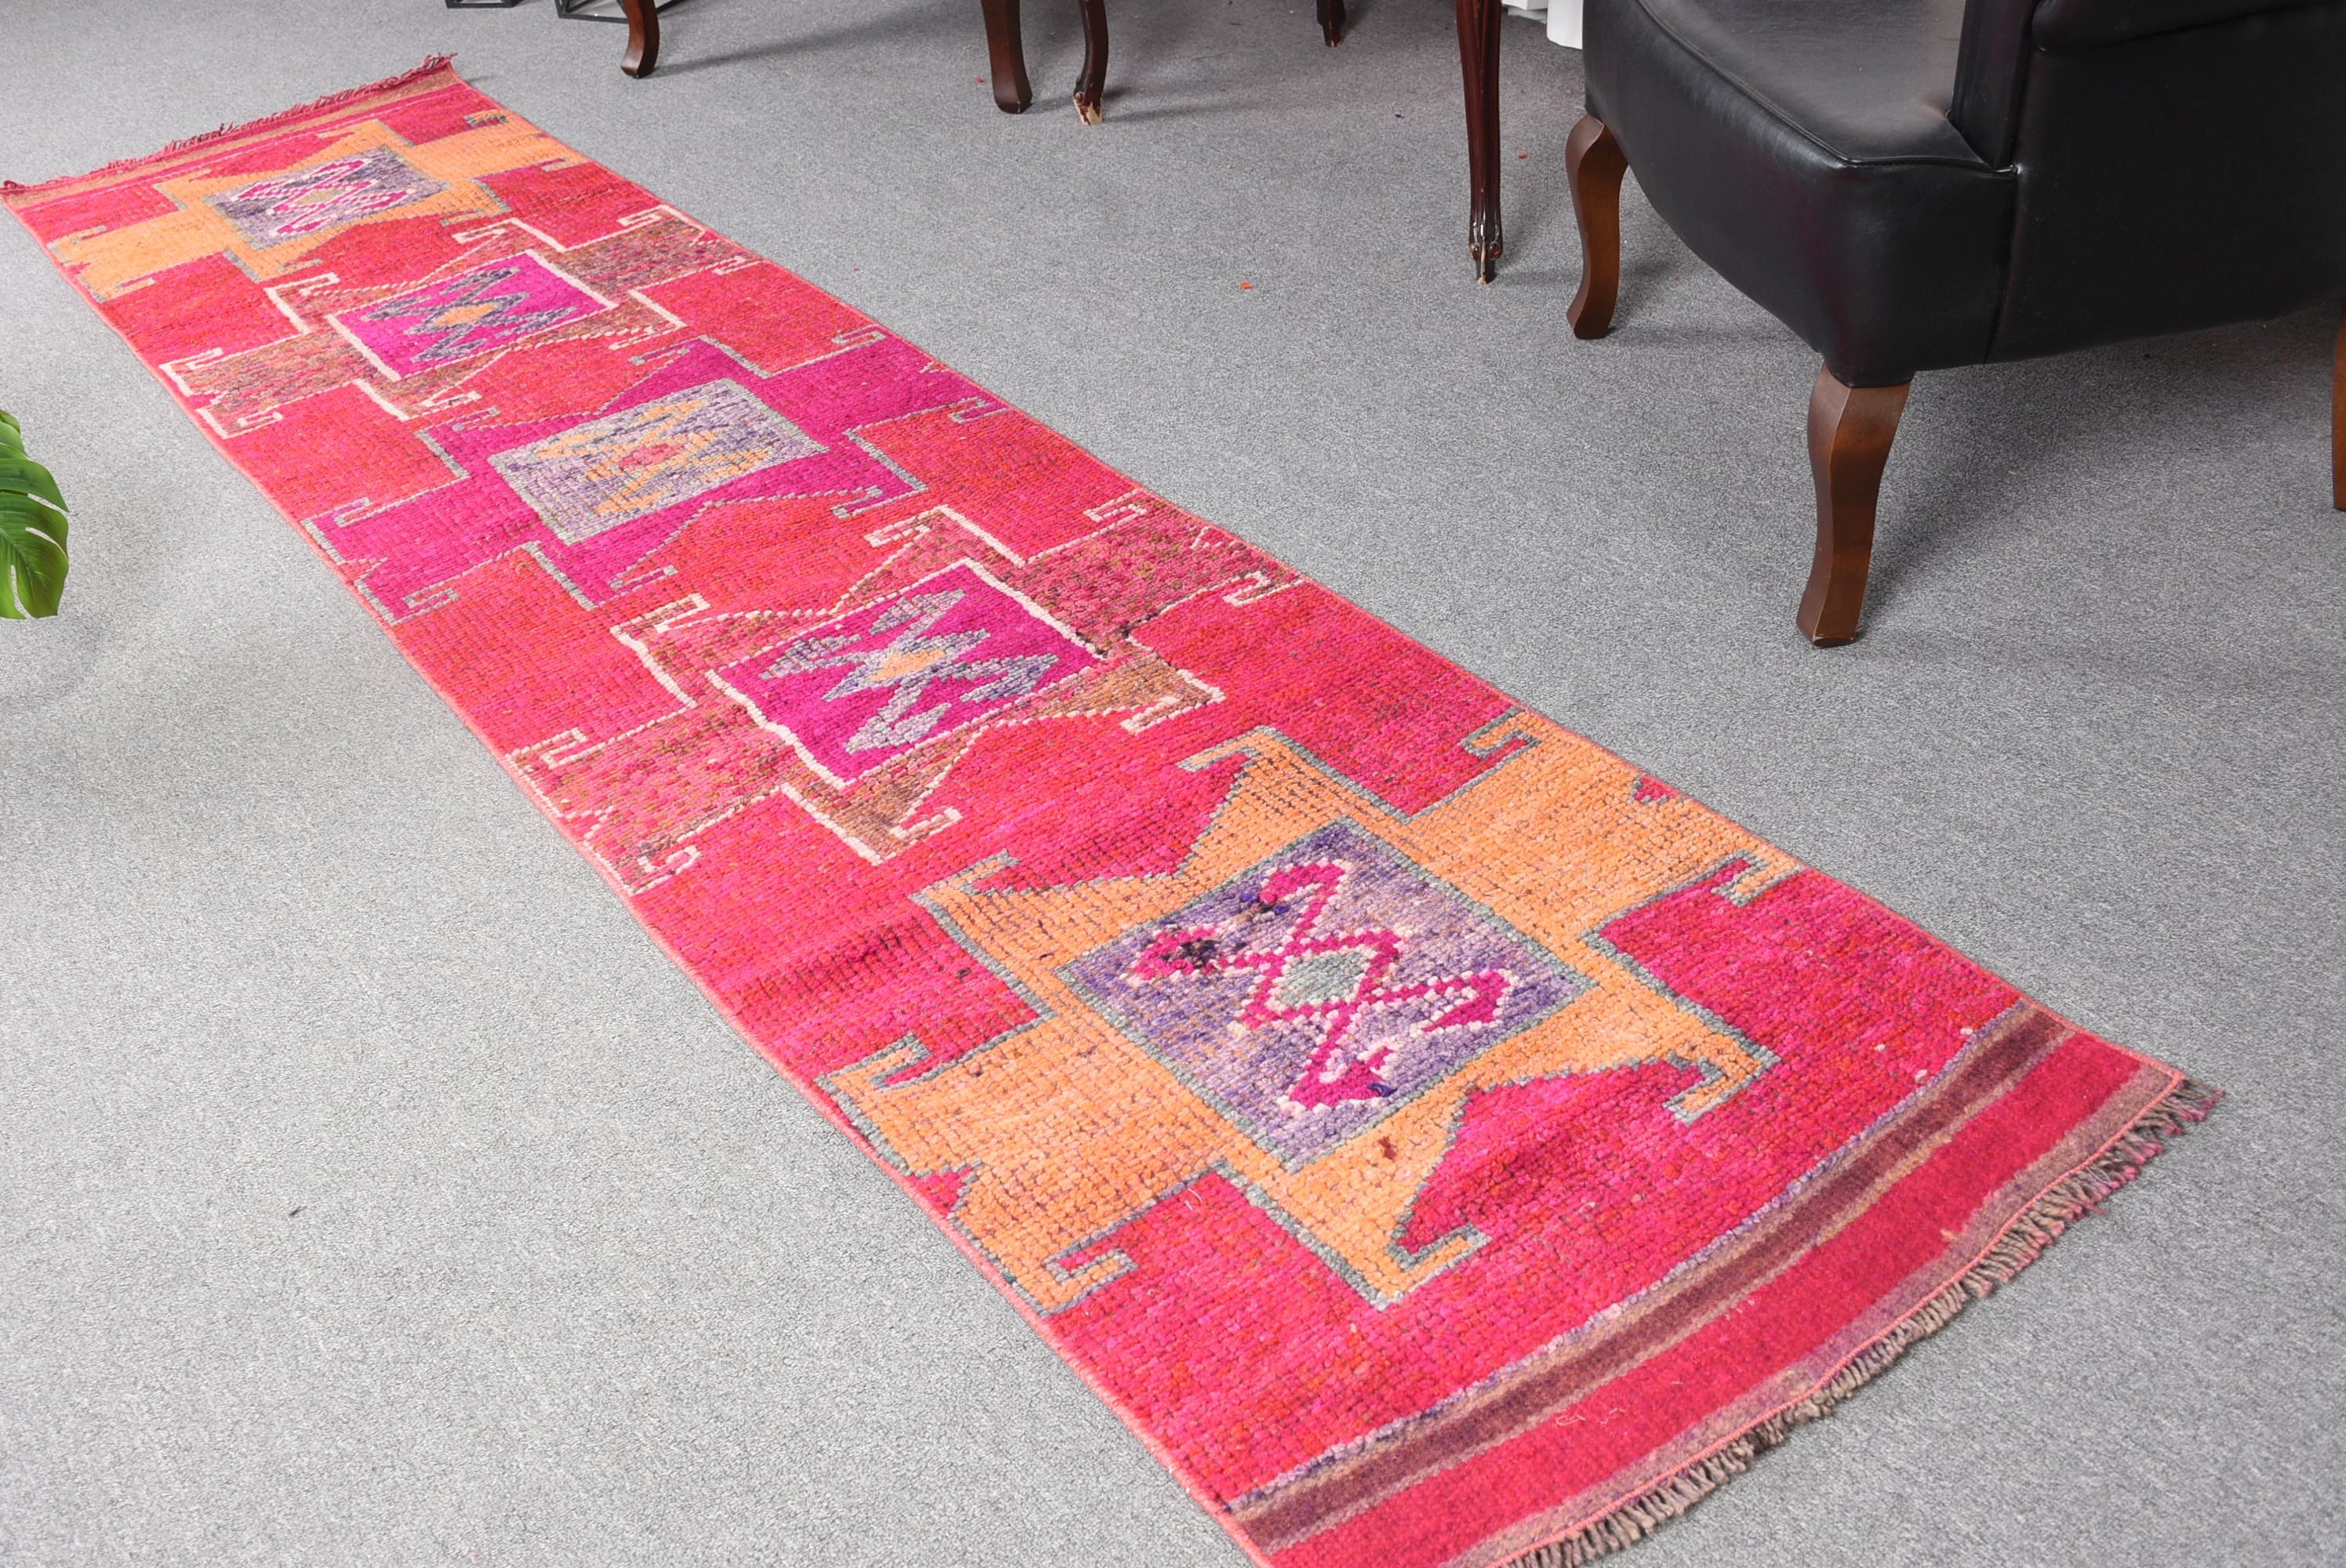 Turkish Rug, Oriental Rugs, Red Moroccan Rug, Cute Rug, Vintage Rug, Corridor Rugs, Rugs for Hallway, 2.3x10.3 ft Runner Rugs